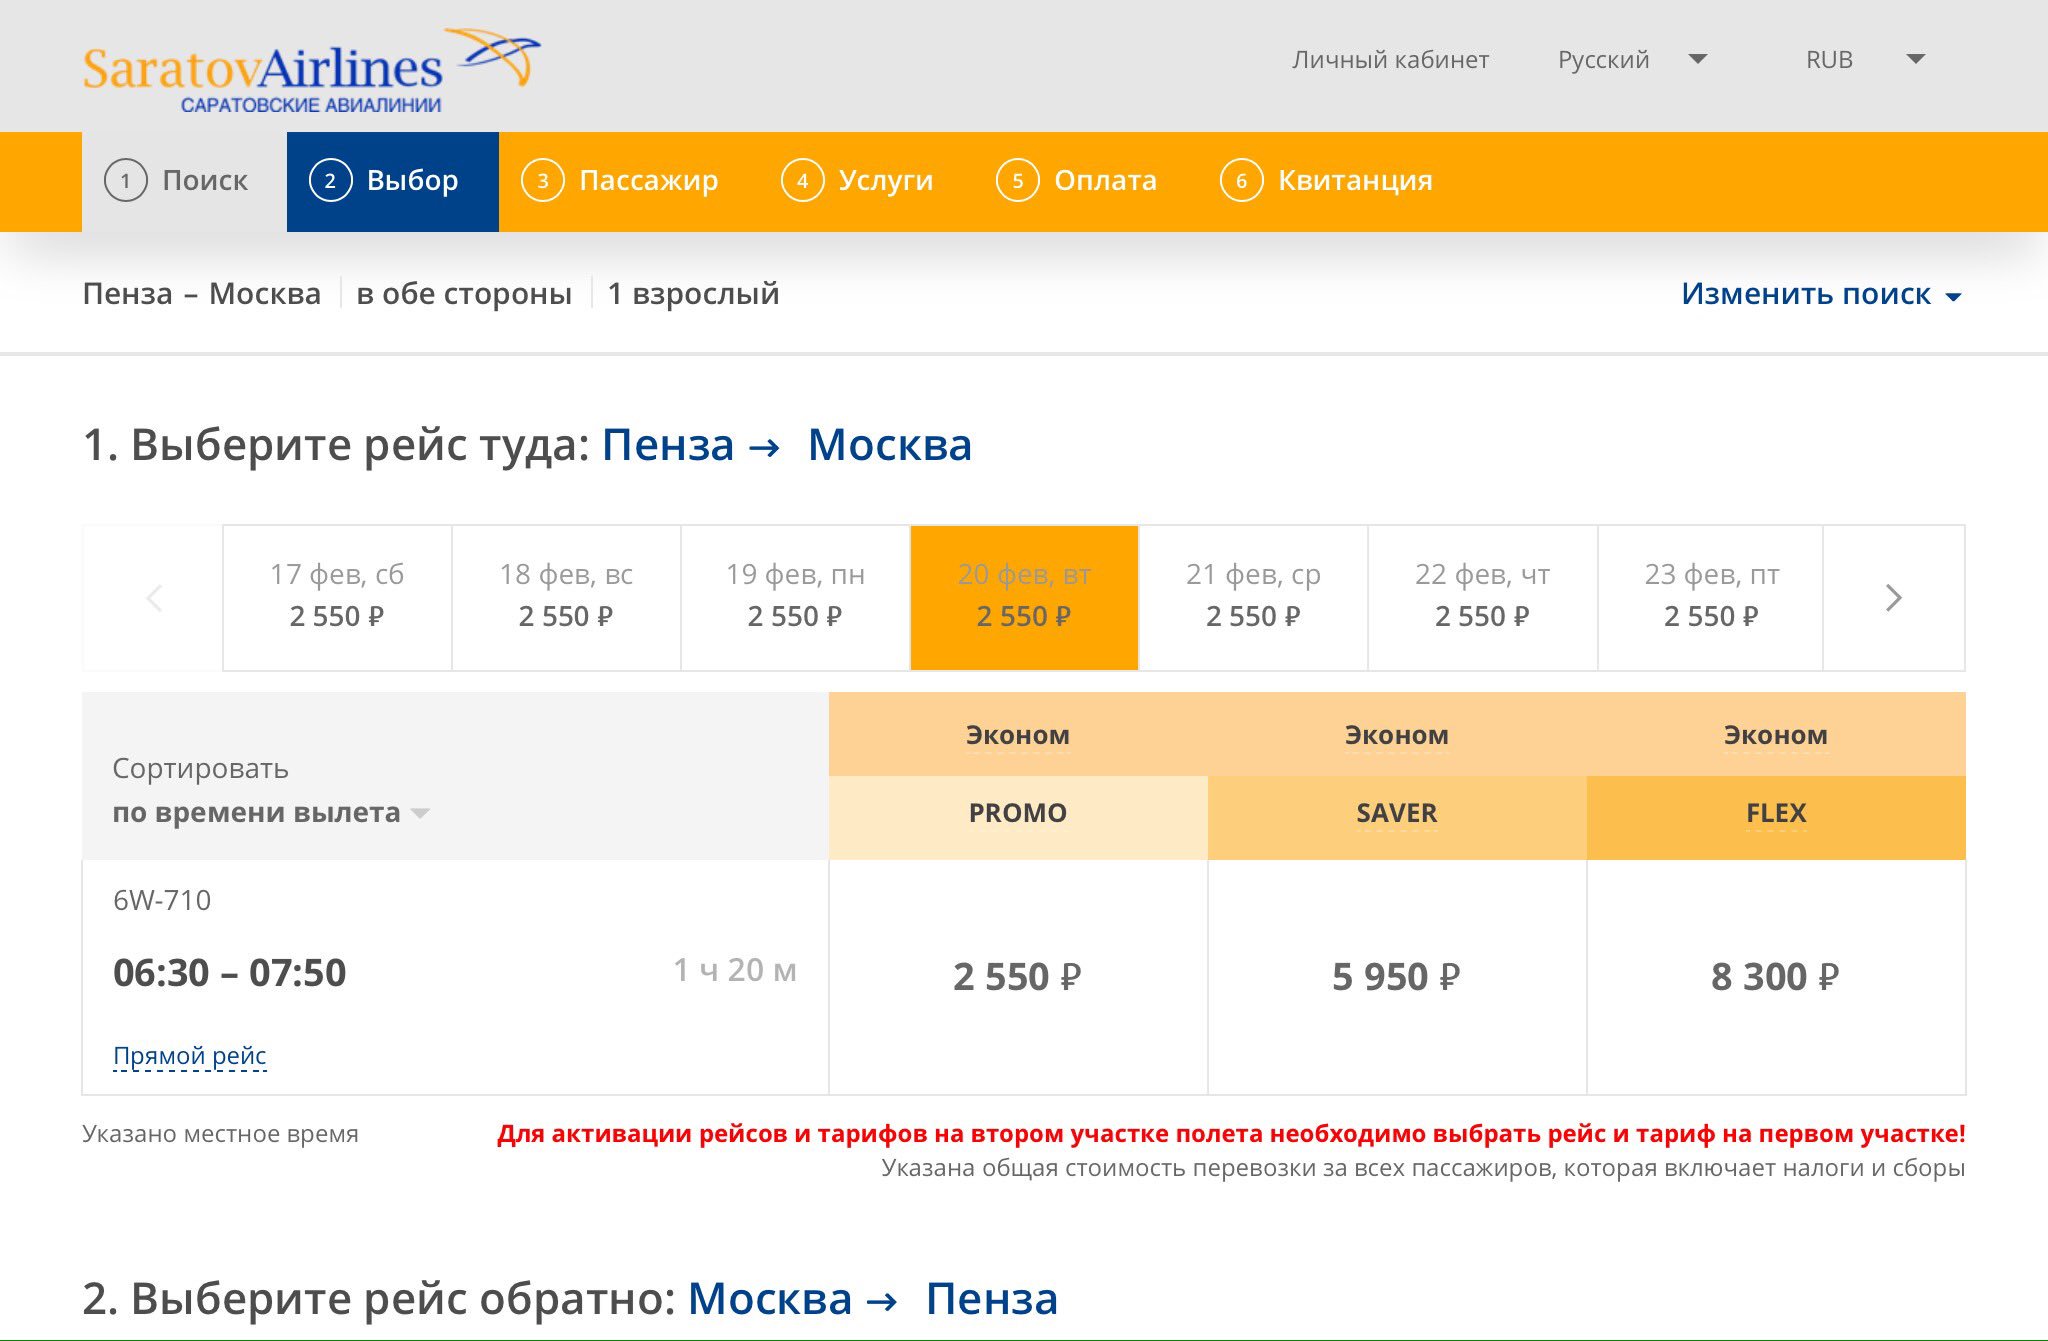 цена авиабилета до москвы из пензы